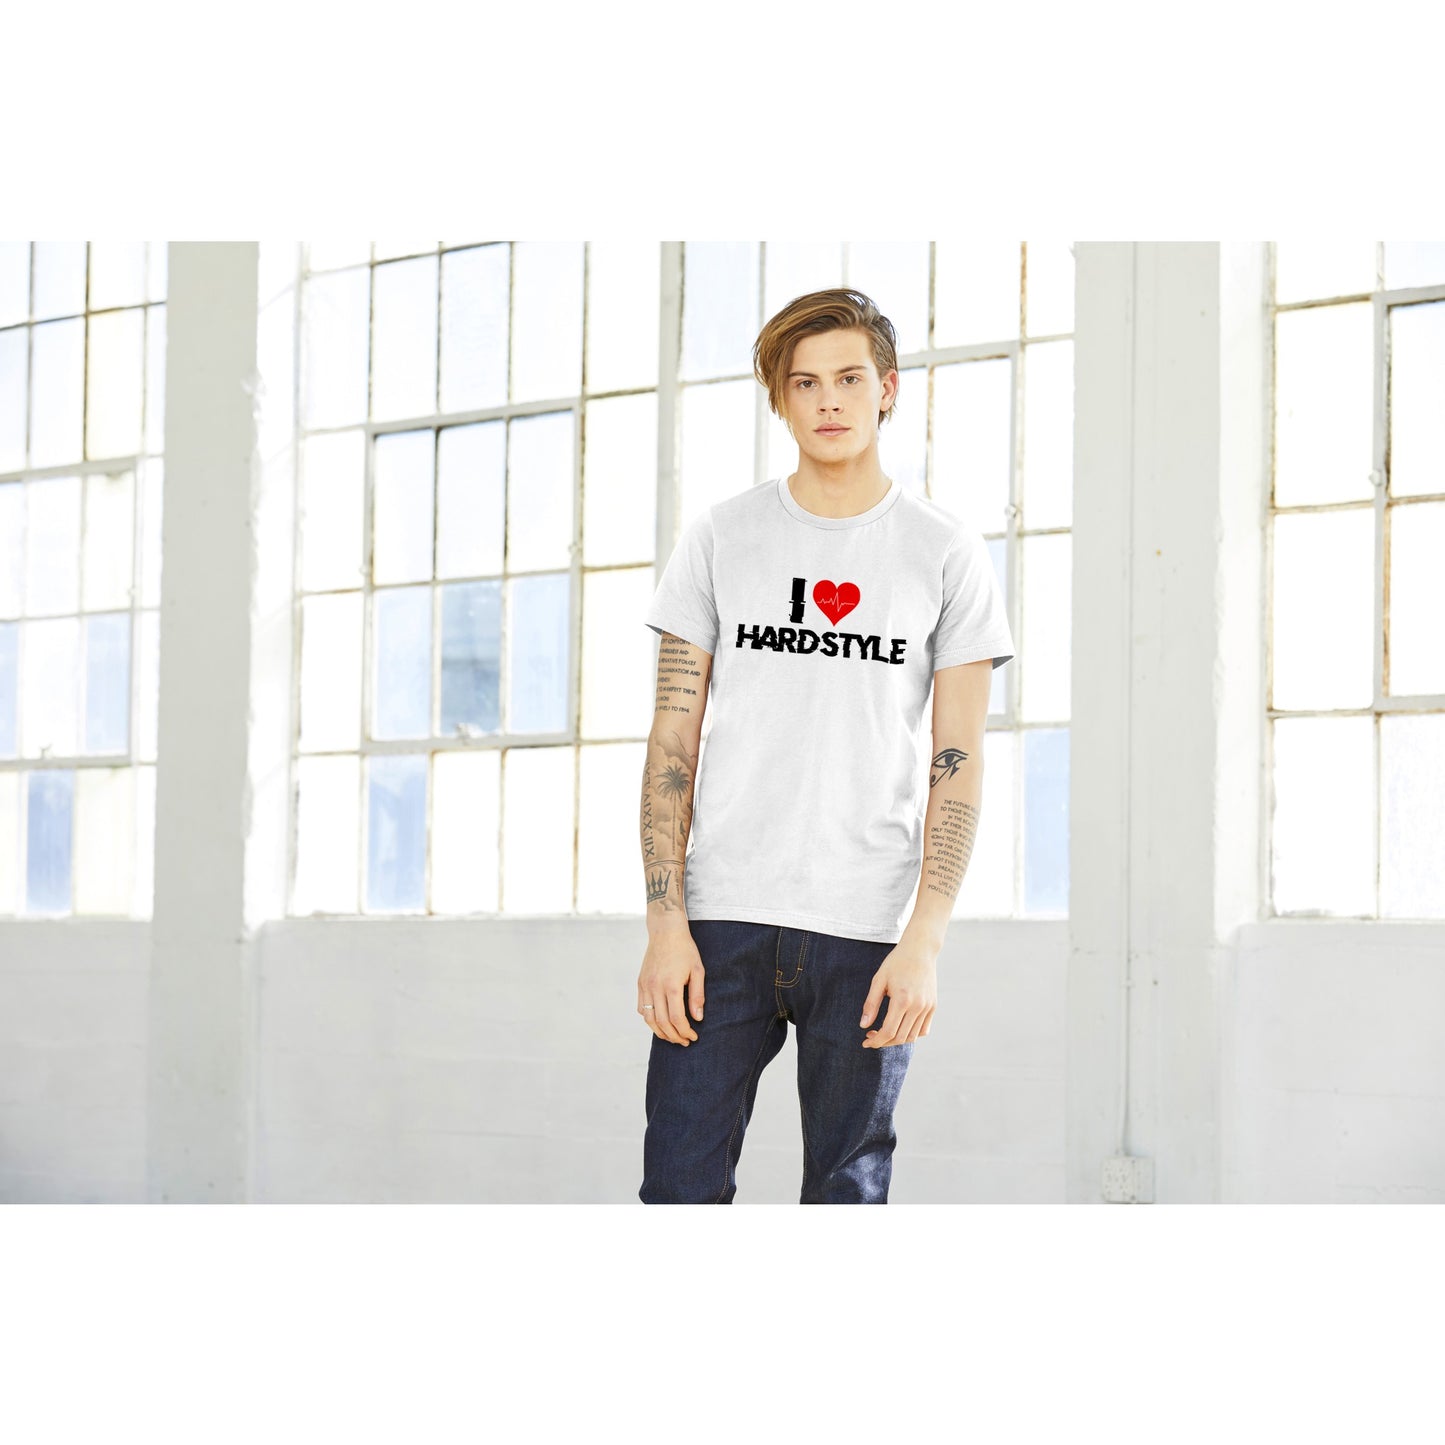 I love Hardstyle -Premium Männer / Unisex T-Shirt mit Rundhalsausschnitt